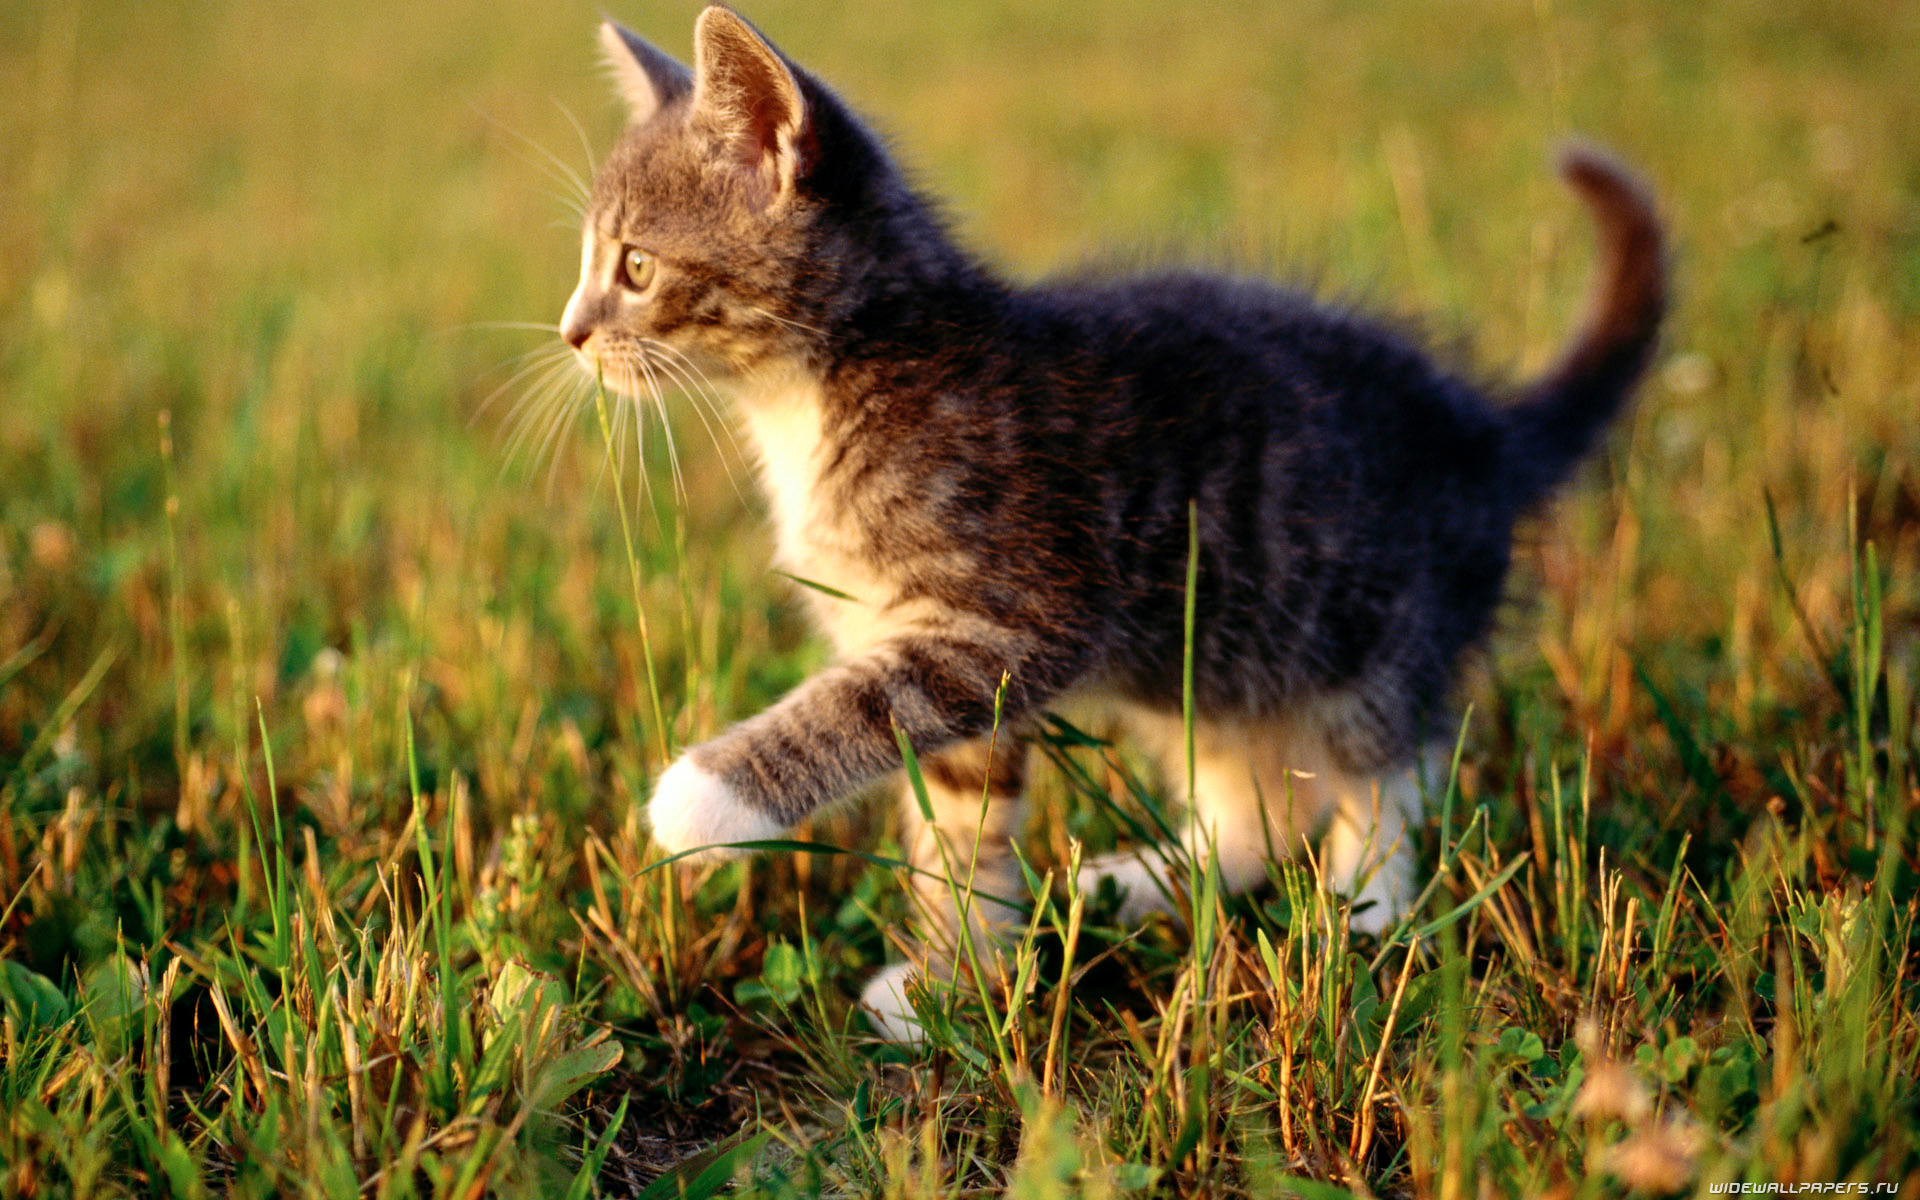 Котенок в траве